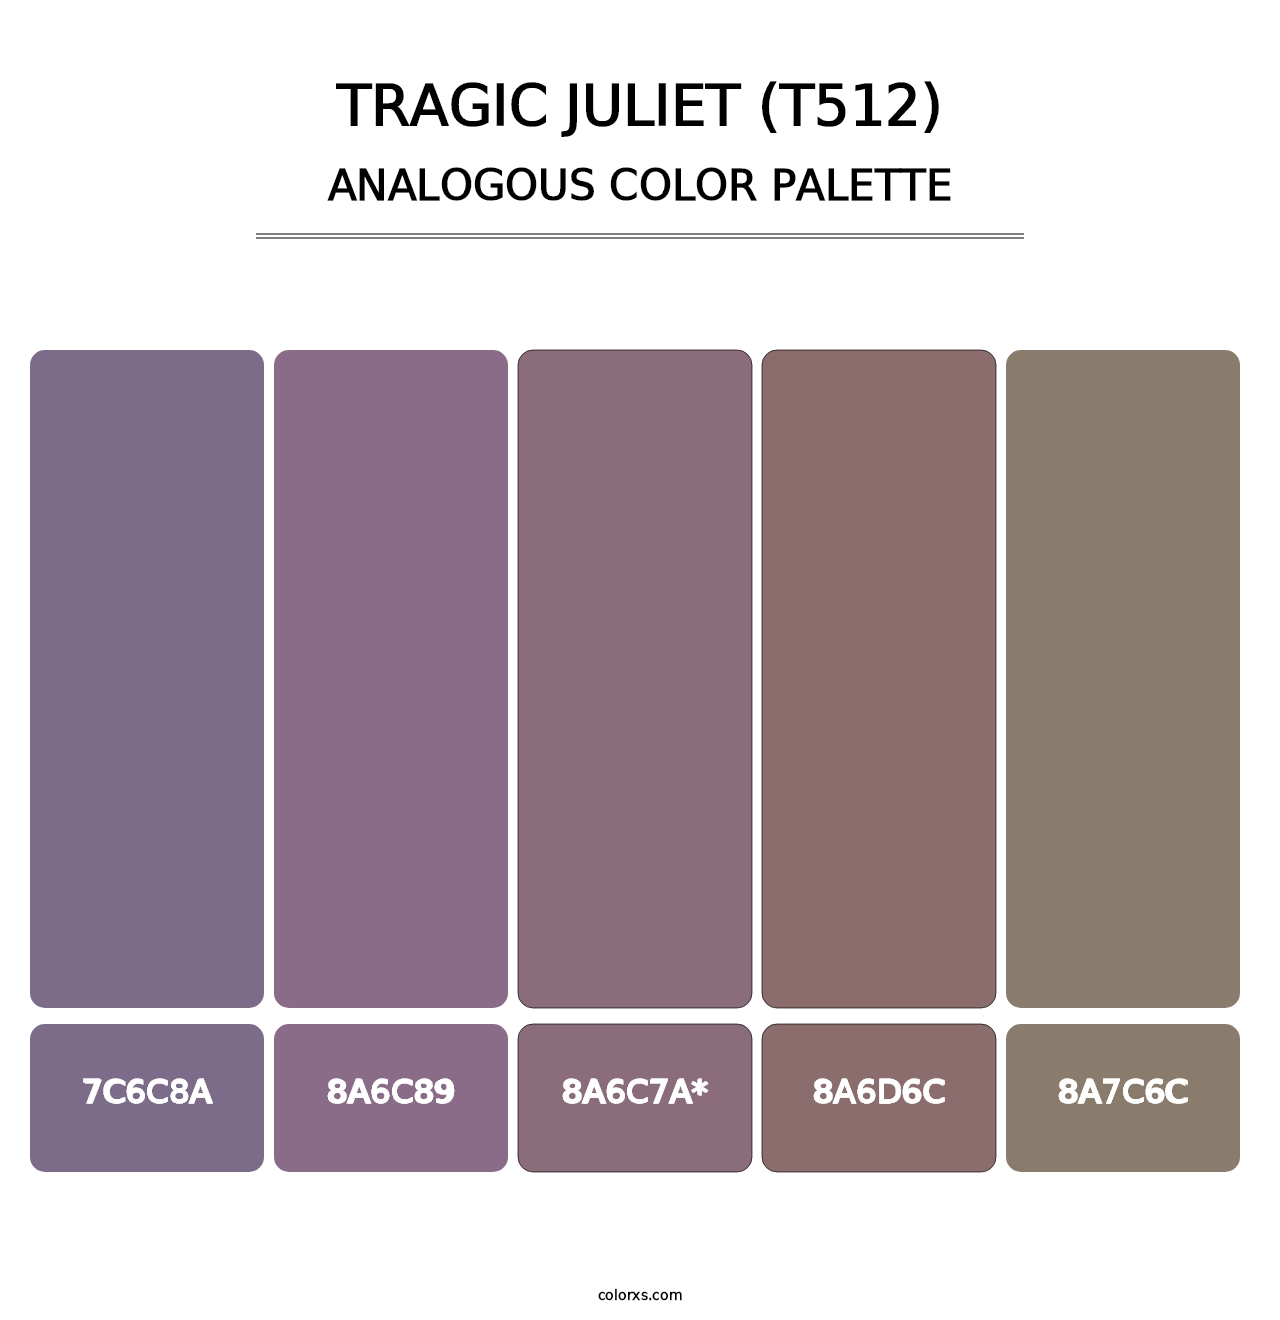 Tragic Juliet (T512) - Analogous Color Palette